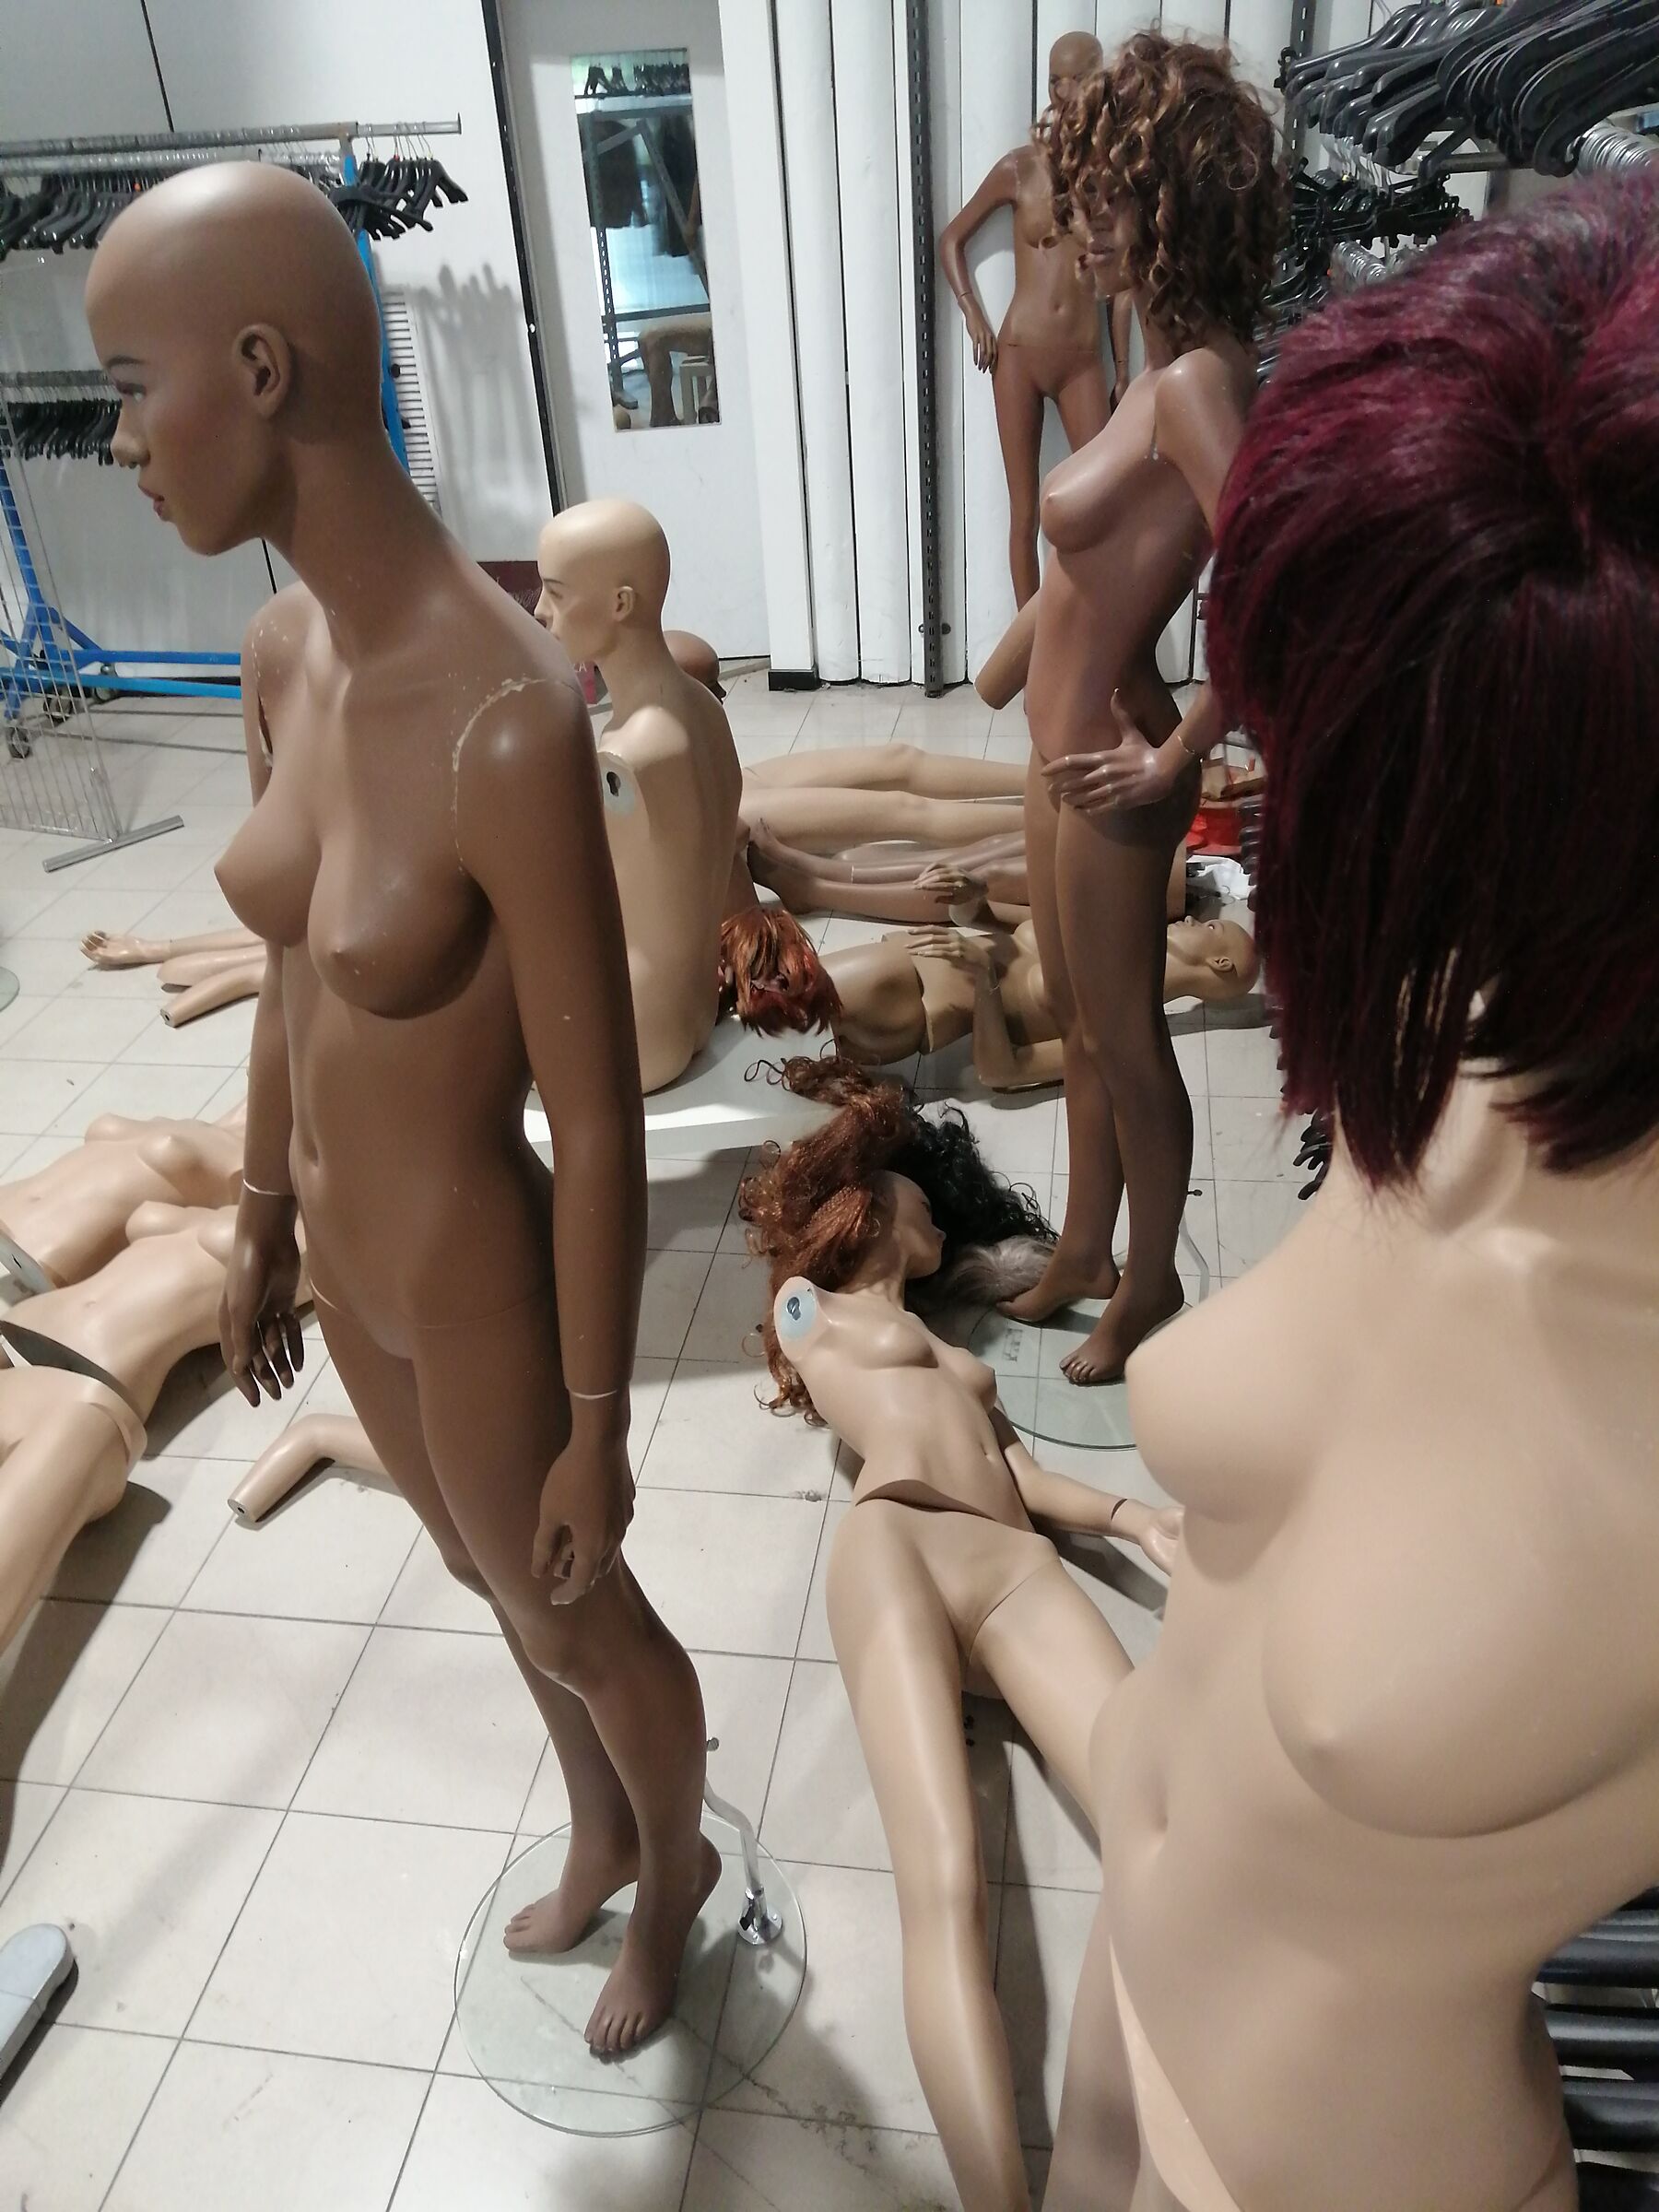 Orgy between mannequins ...